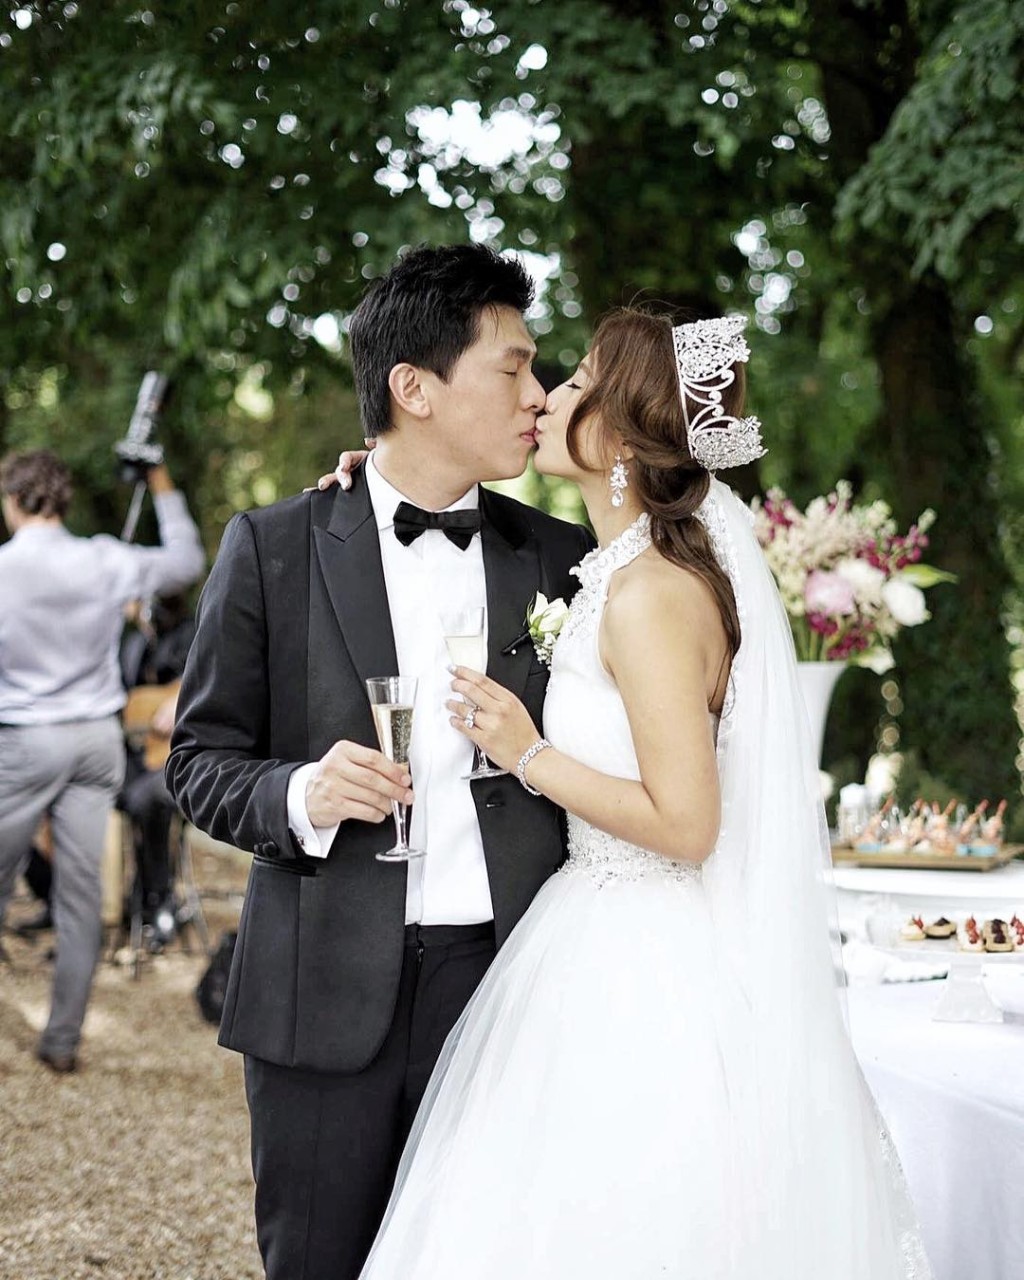 支嚳儀曾於社交網公開2017年在法國城堡舉行盛大婚禮的片段。